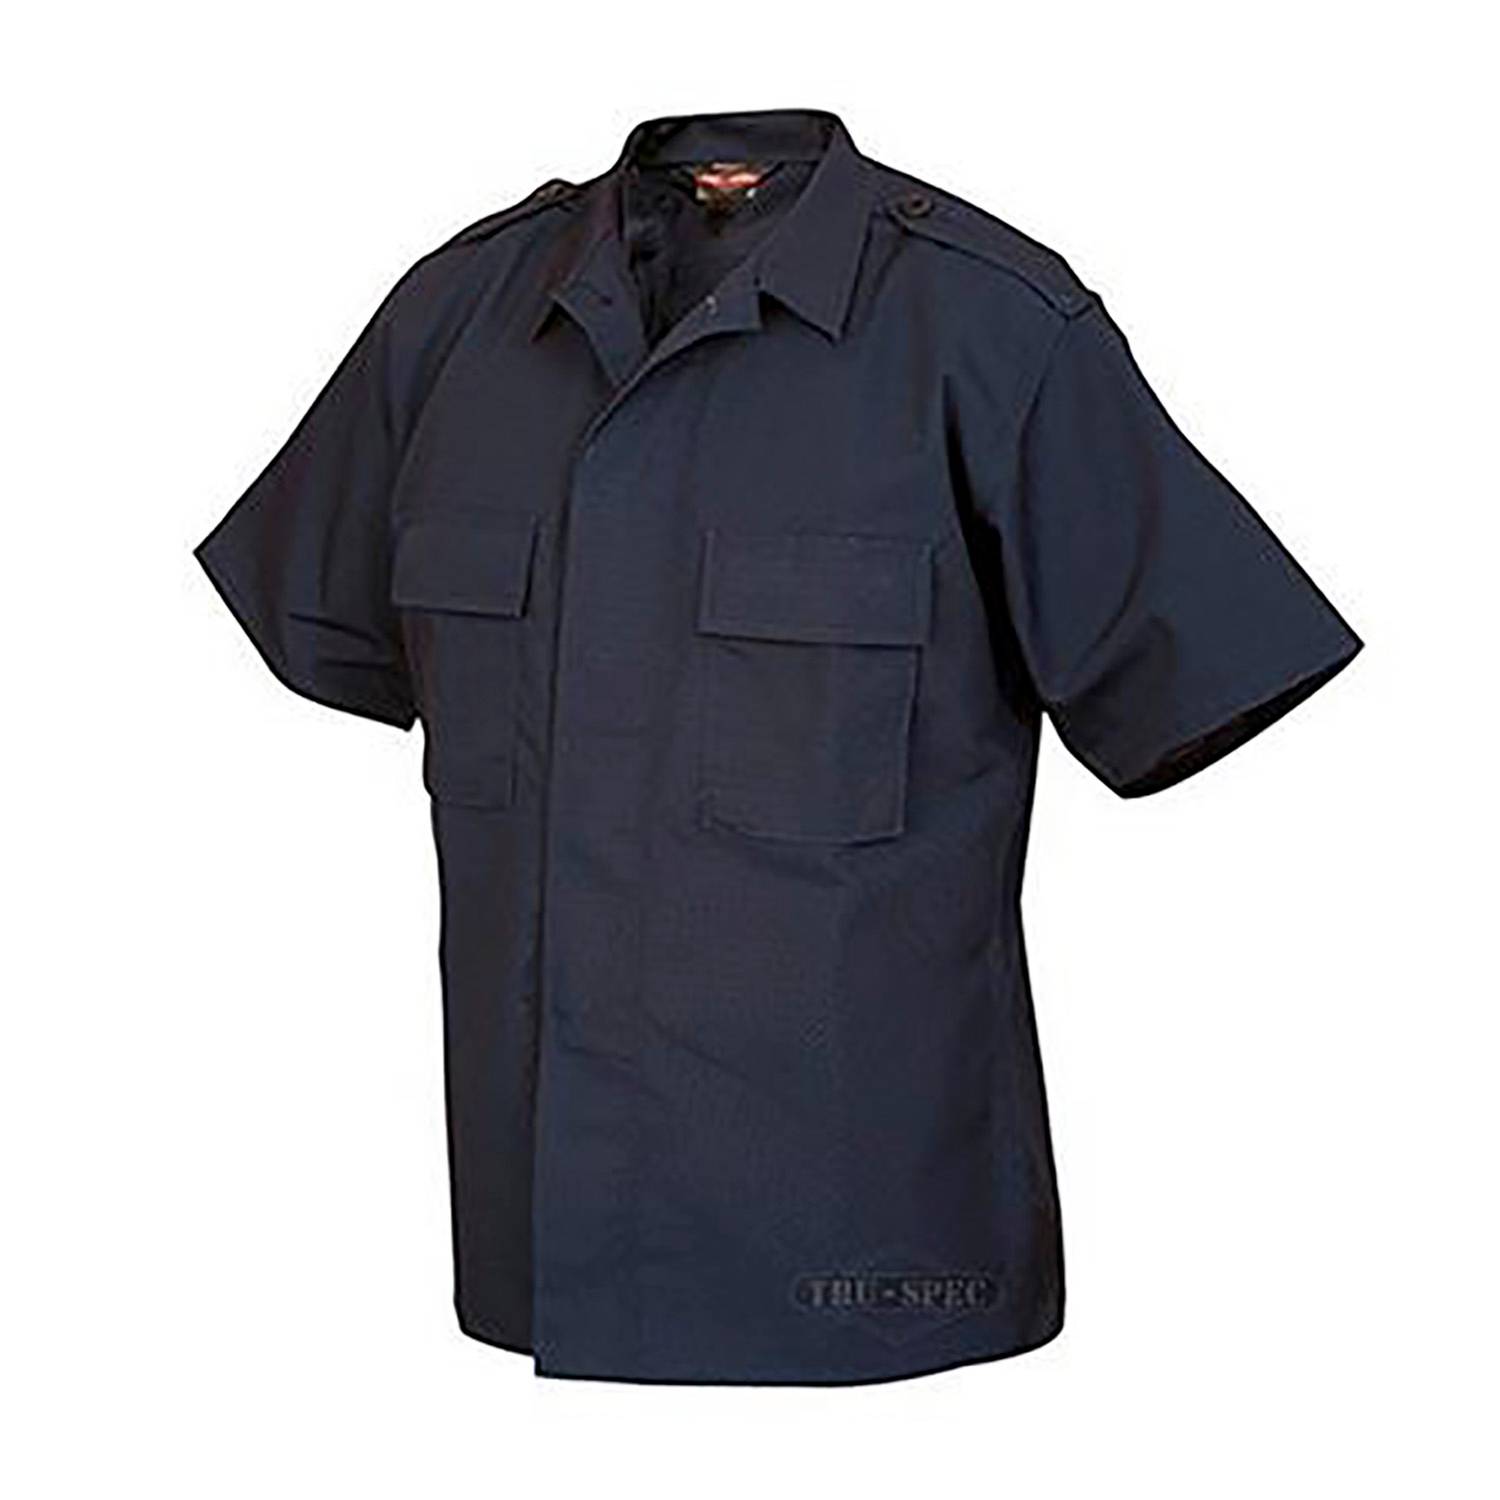 Tru Spec Short Sleeve Tactical Shirt